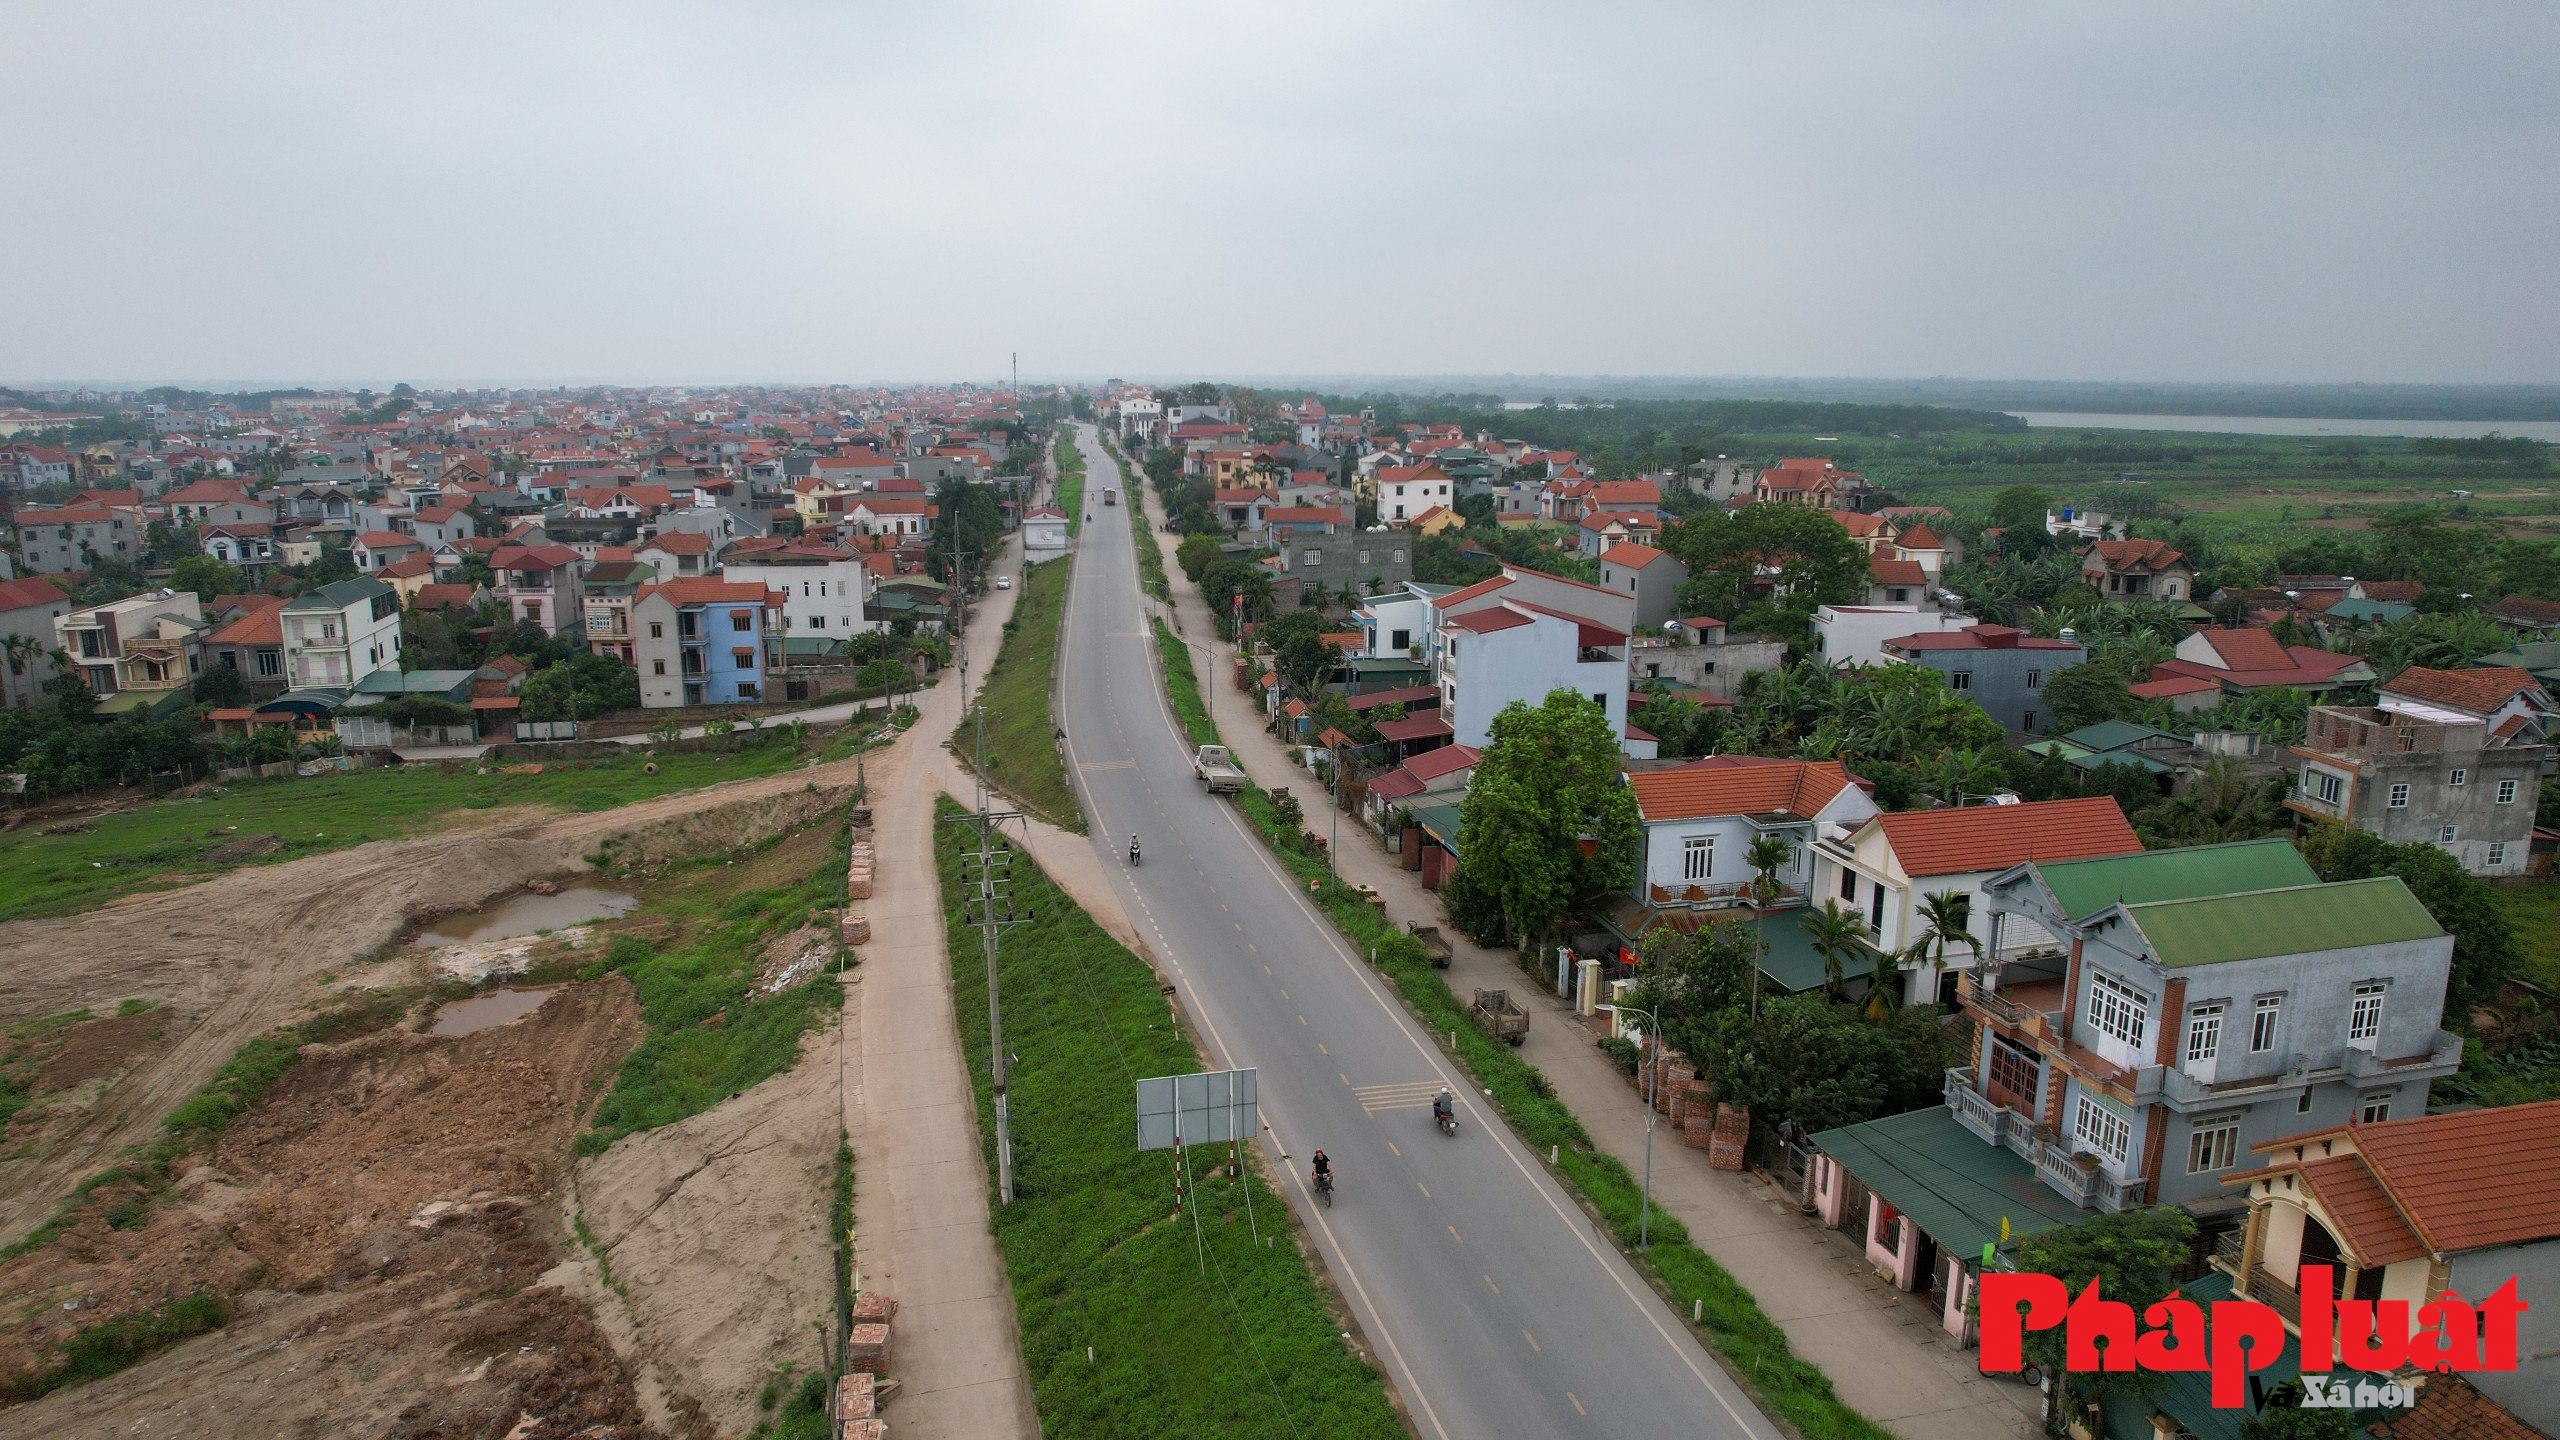 Toàn cảnh vị trí sắp xây dựng cầu Hồng Hà nối liền hai huyện Đan Phượng - Mê Linh